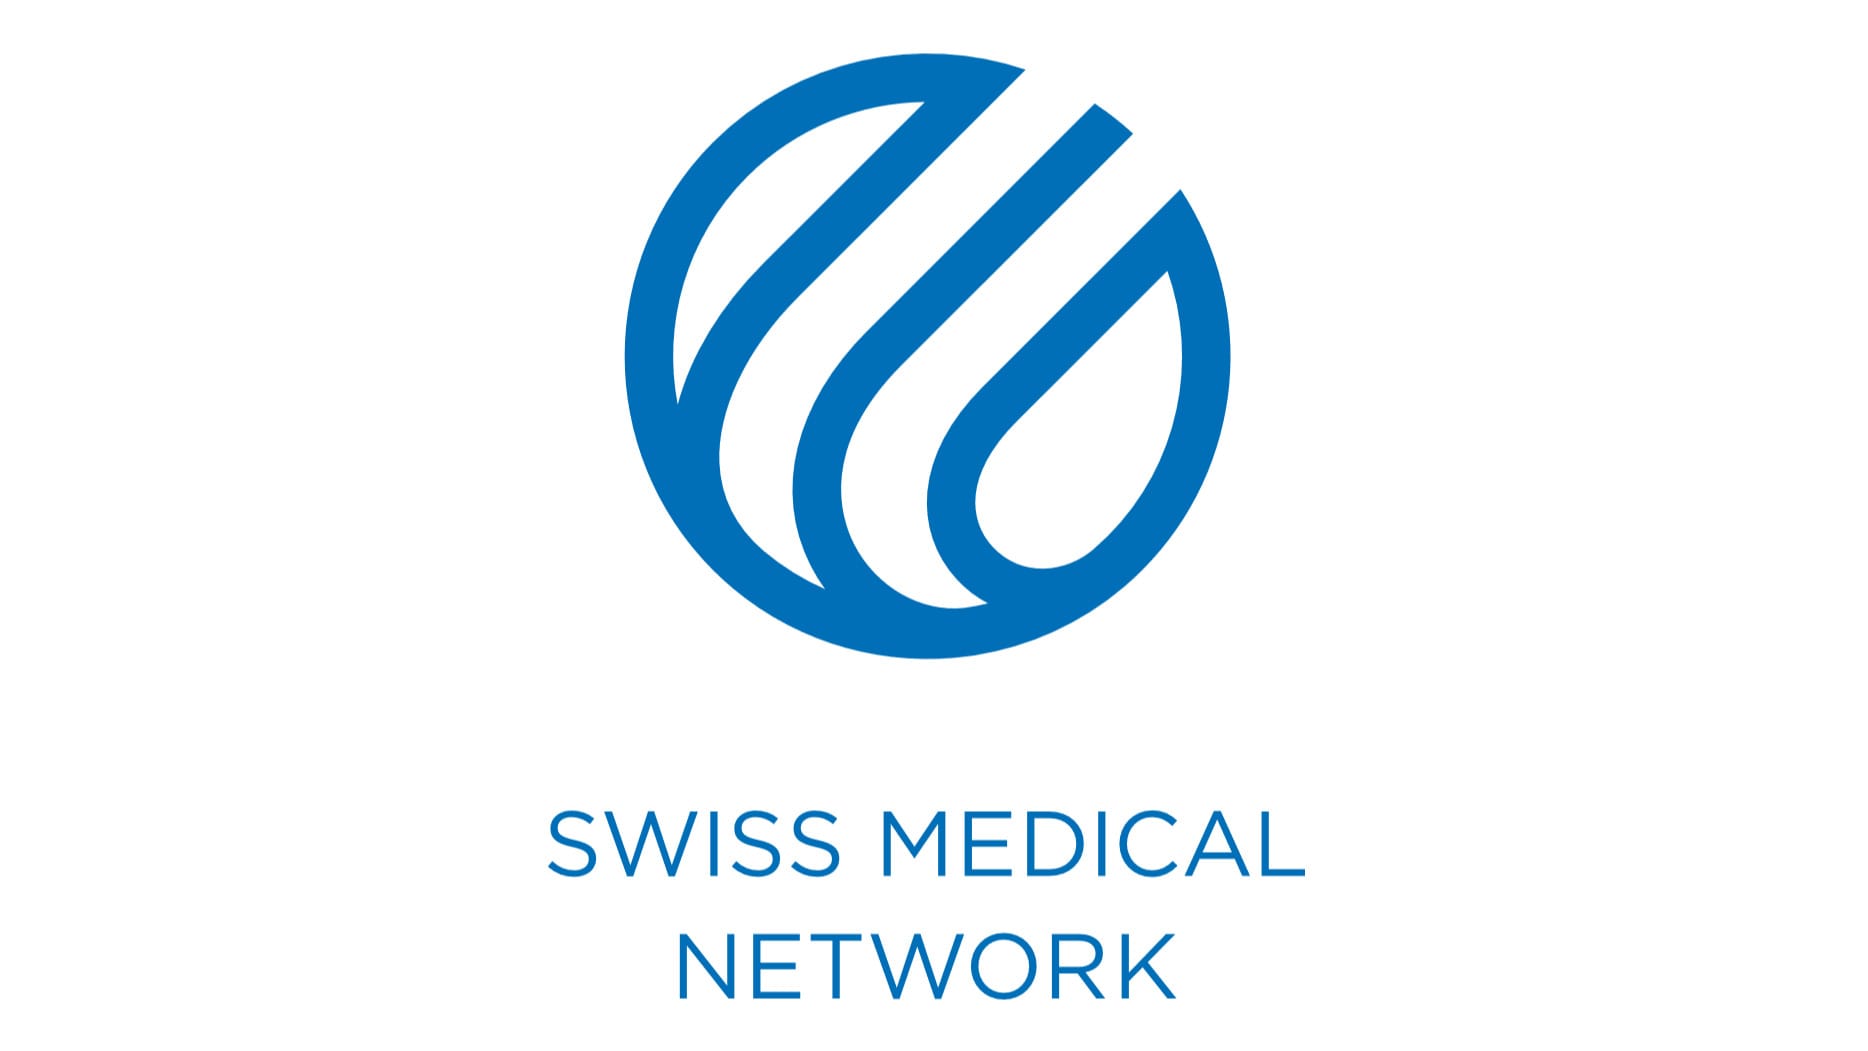 Führen in der Krise: So macht es die Swiss Medical Network-Gruppe